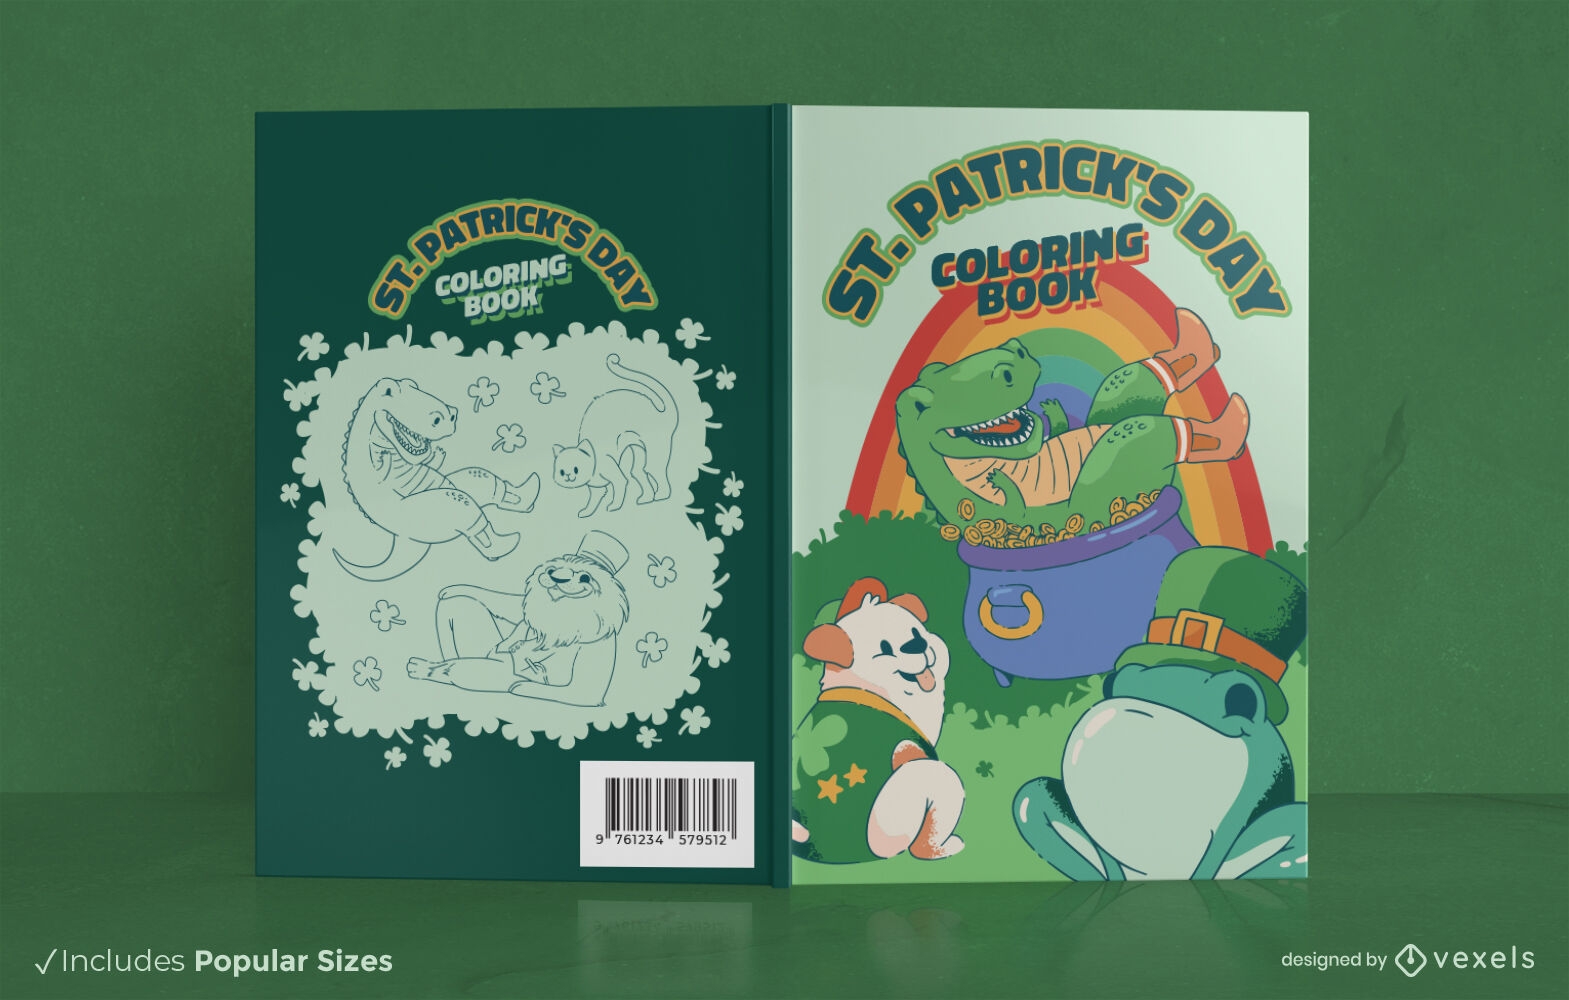 design de capa de livro de animais irlandeses s?o patr?cio